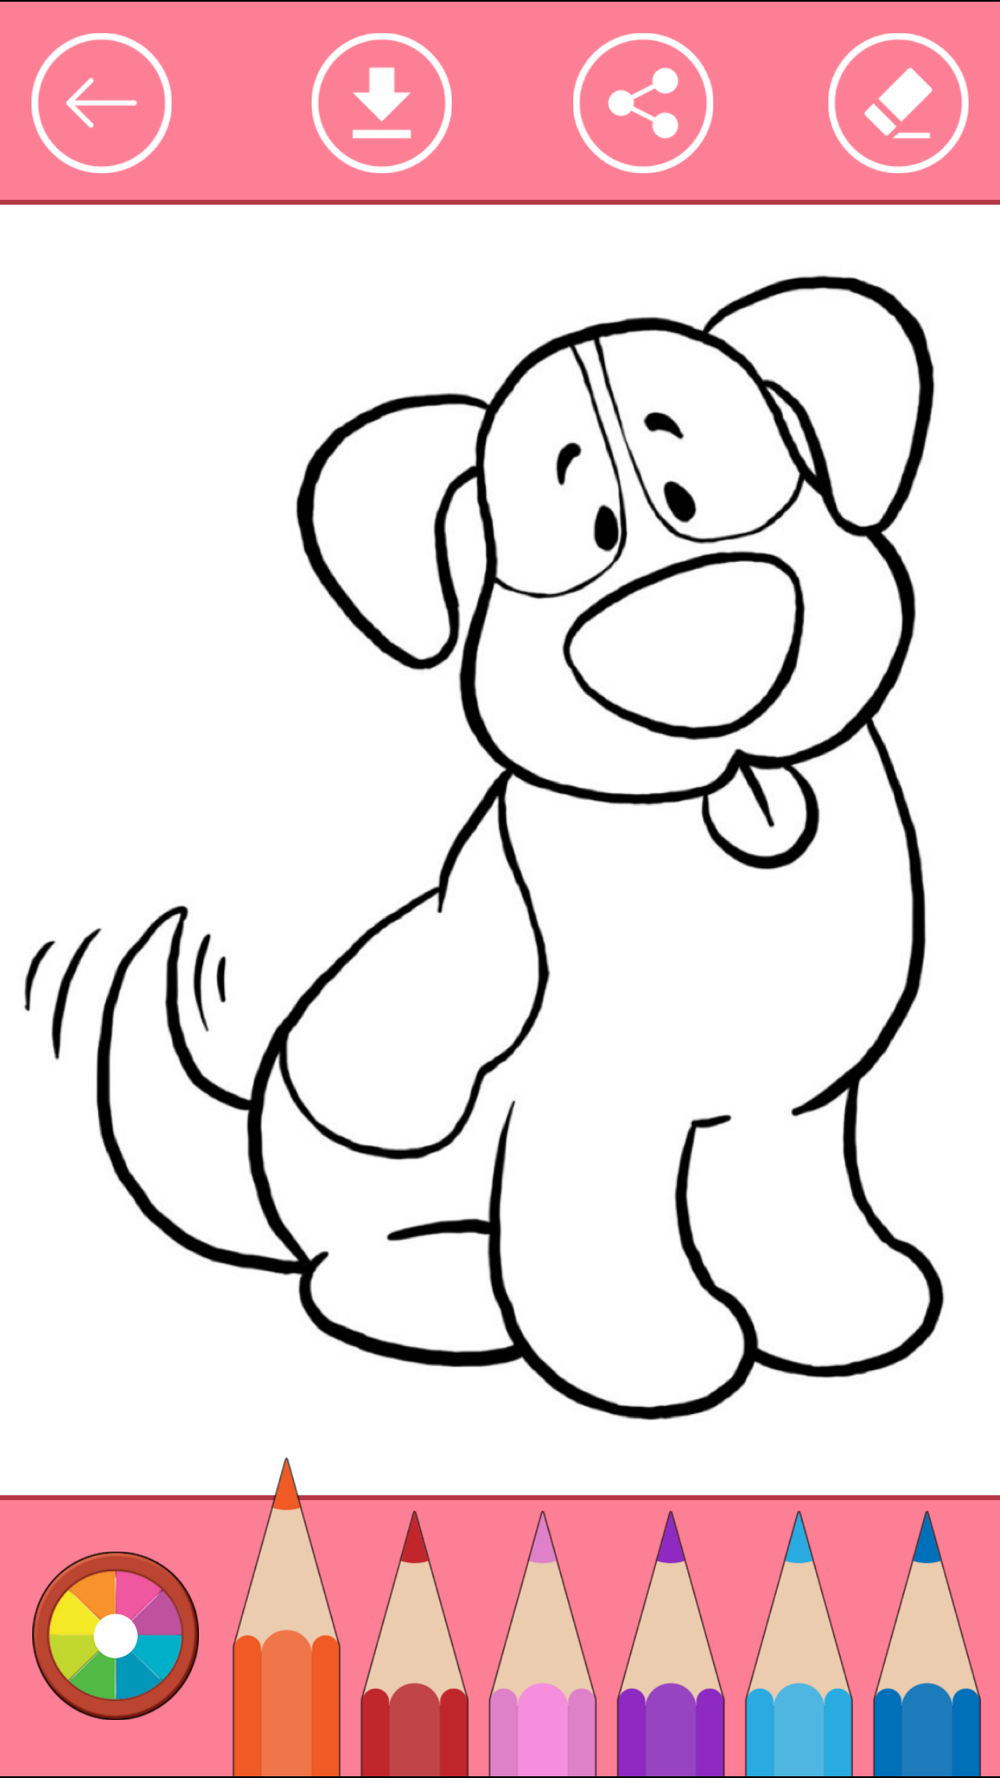 塗り絵の本 子供のための犬の犬 可愛い犬の塗り絵 塗り絵の本 Free Download App For Iphone Steprimo Com